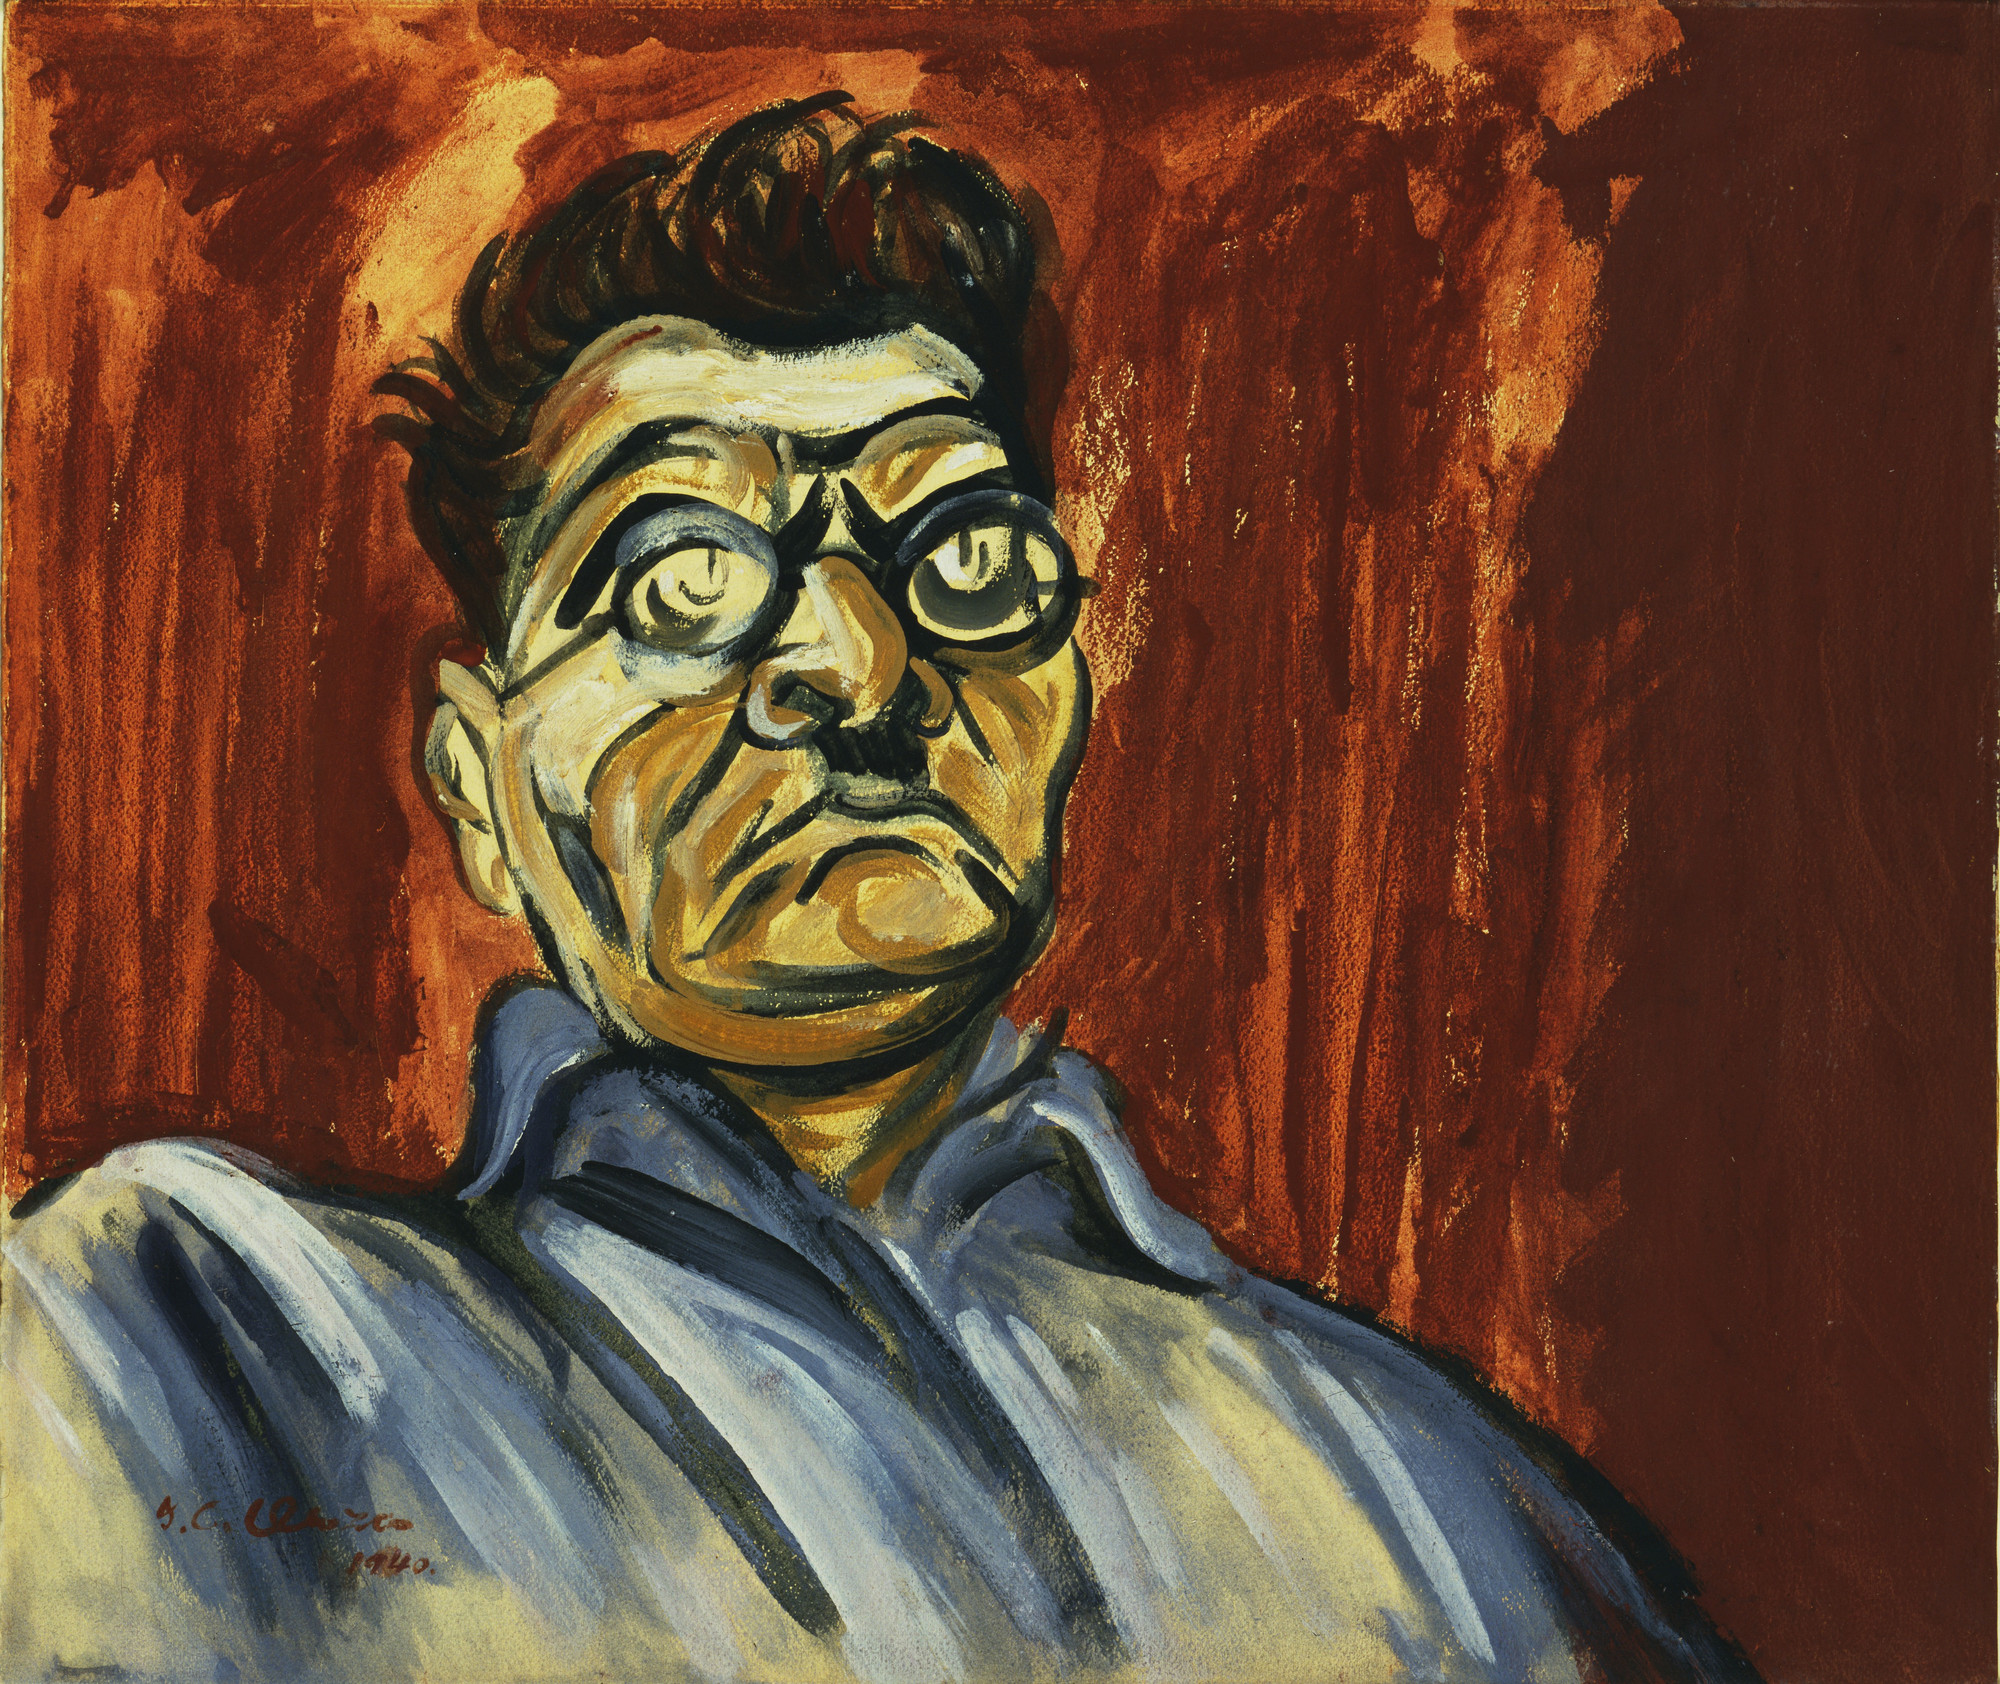 José Clemente Orozco. Self-Portrait. 1940